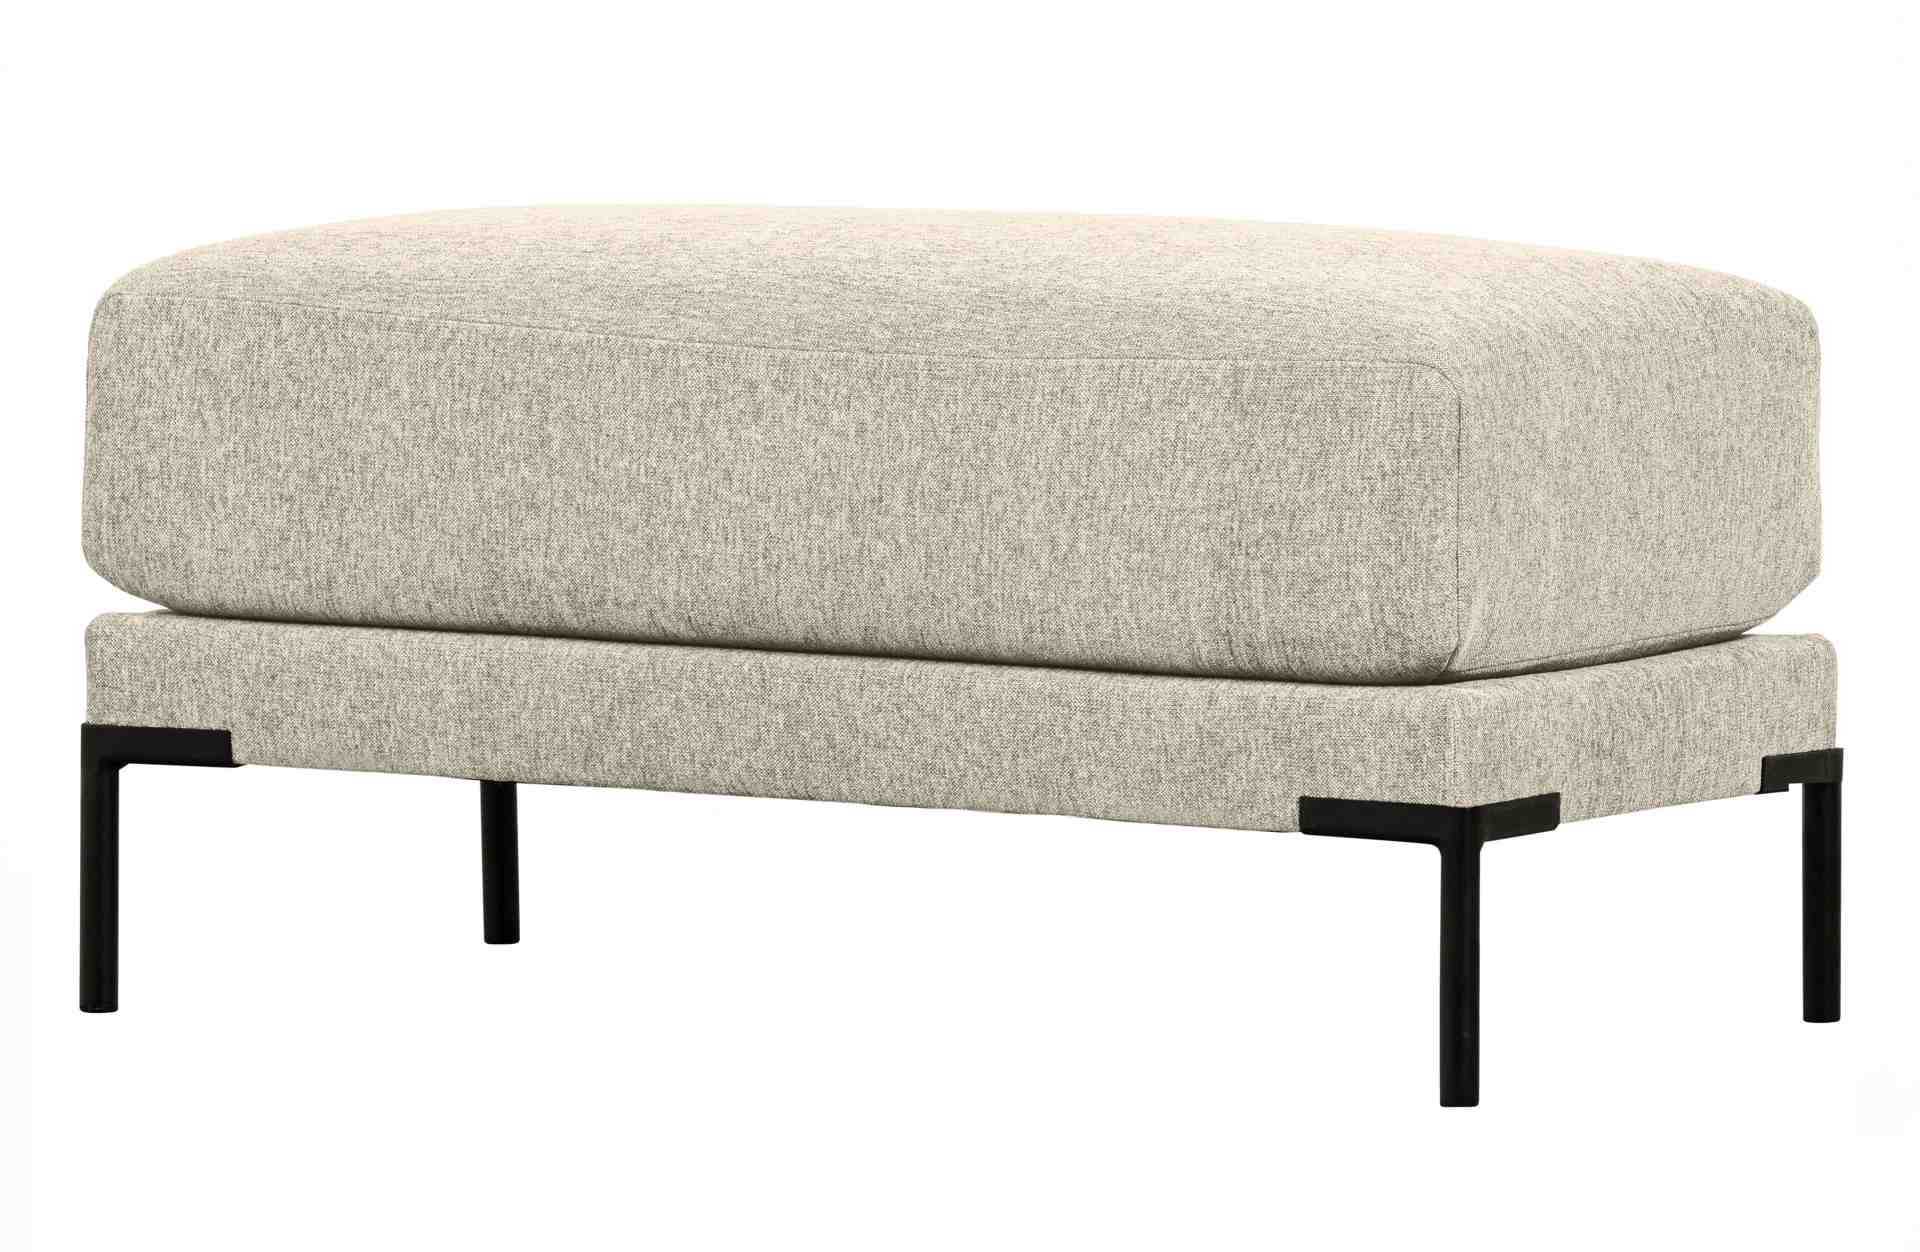 Das Modulsofa Couple Lounge überzeugt mit seinem modernen Design. Das Lounge Element mit der Ausführung 50 cm wurde aus Melange Stoff gefertigt, welcher einen einen Sand Farbton besitzen. Das Gestell ist aus Metall und hat eine schwarze Farbe. Das Element